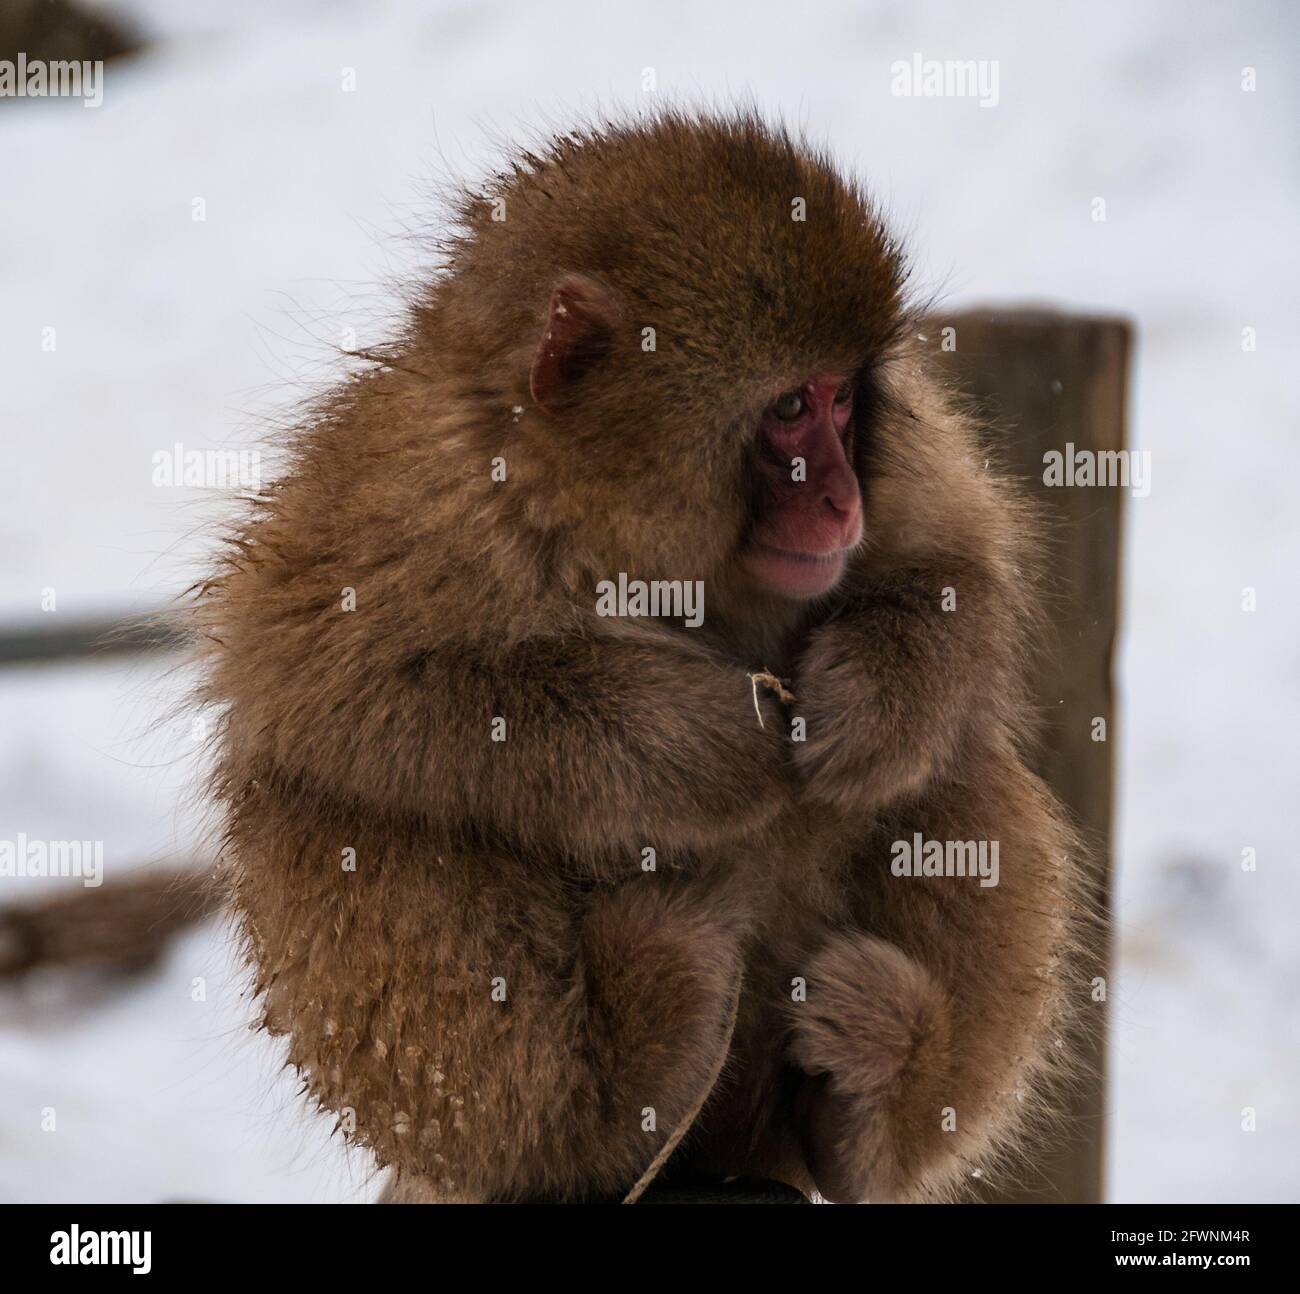 Mono de nieve bebé con otro Foto de stock 1876028995